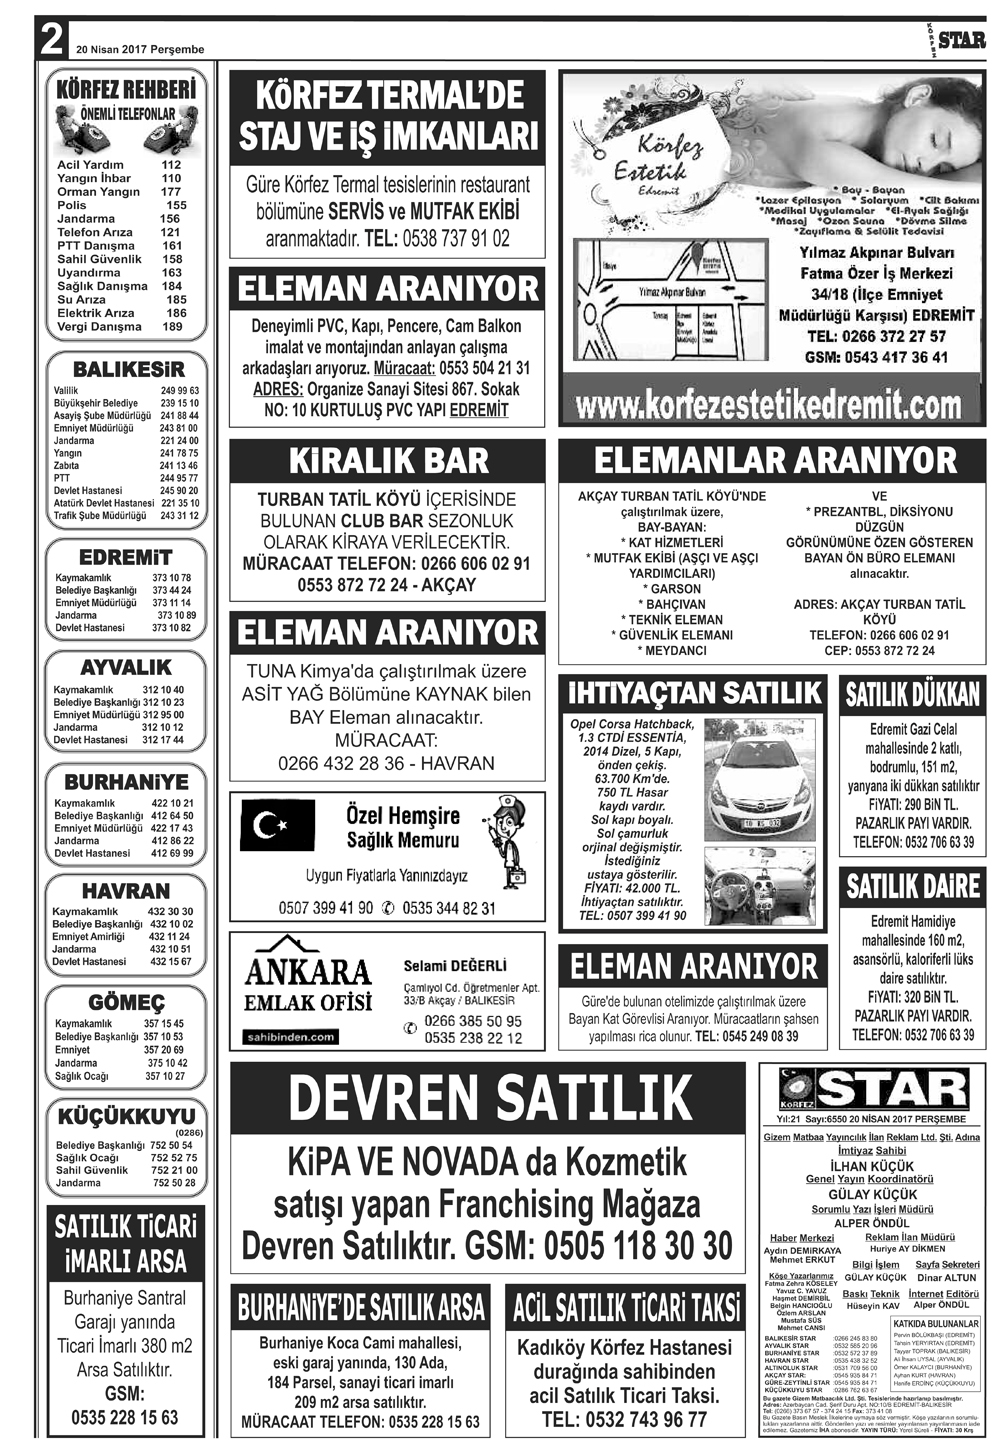 20042017-tarihli-gazetemiz-8717-04-20082921.jpg